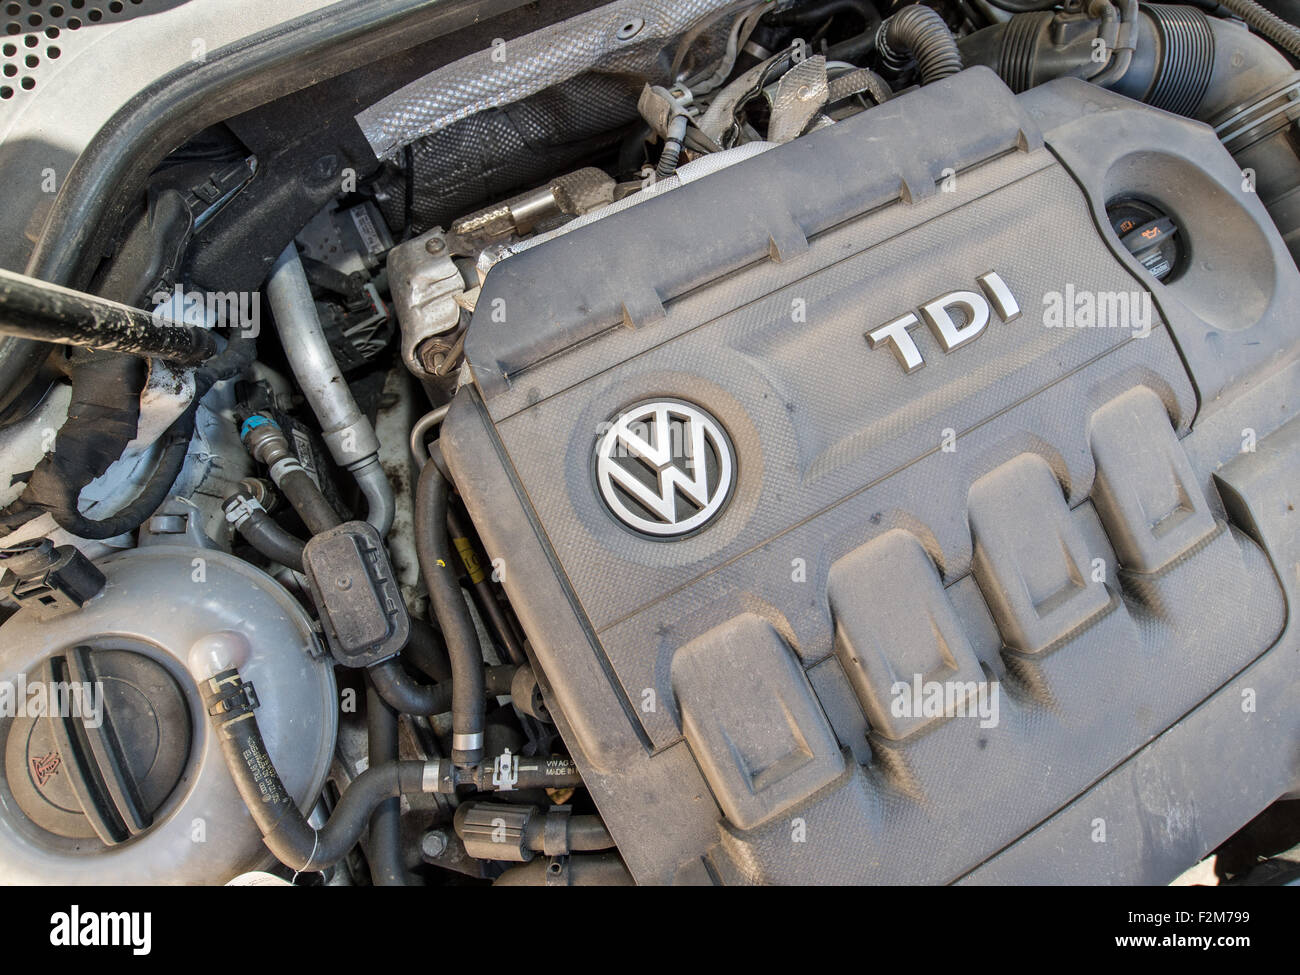 reunirse Médico Identidad El logotipo de la empresa automovilística Volkswagen VW está en exhibición  en un motor de un coche diesel VW Golf 2.0 TDI, construido en 2012, en  Frankfurt Oder, Alemania, el 21 de